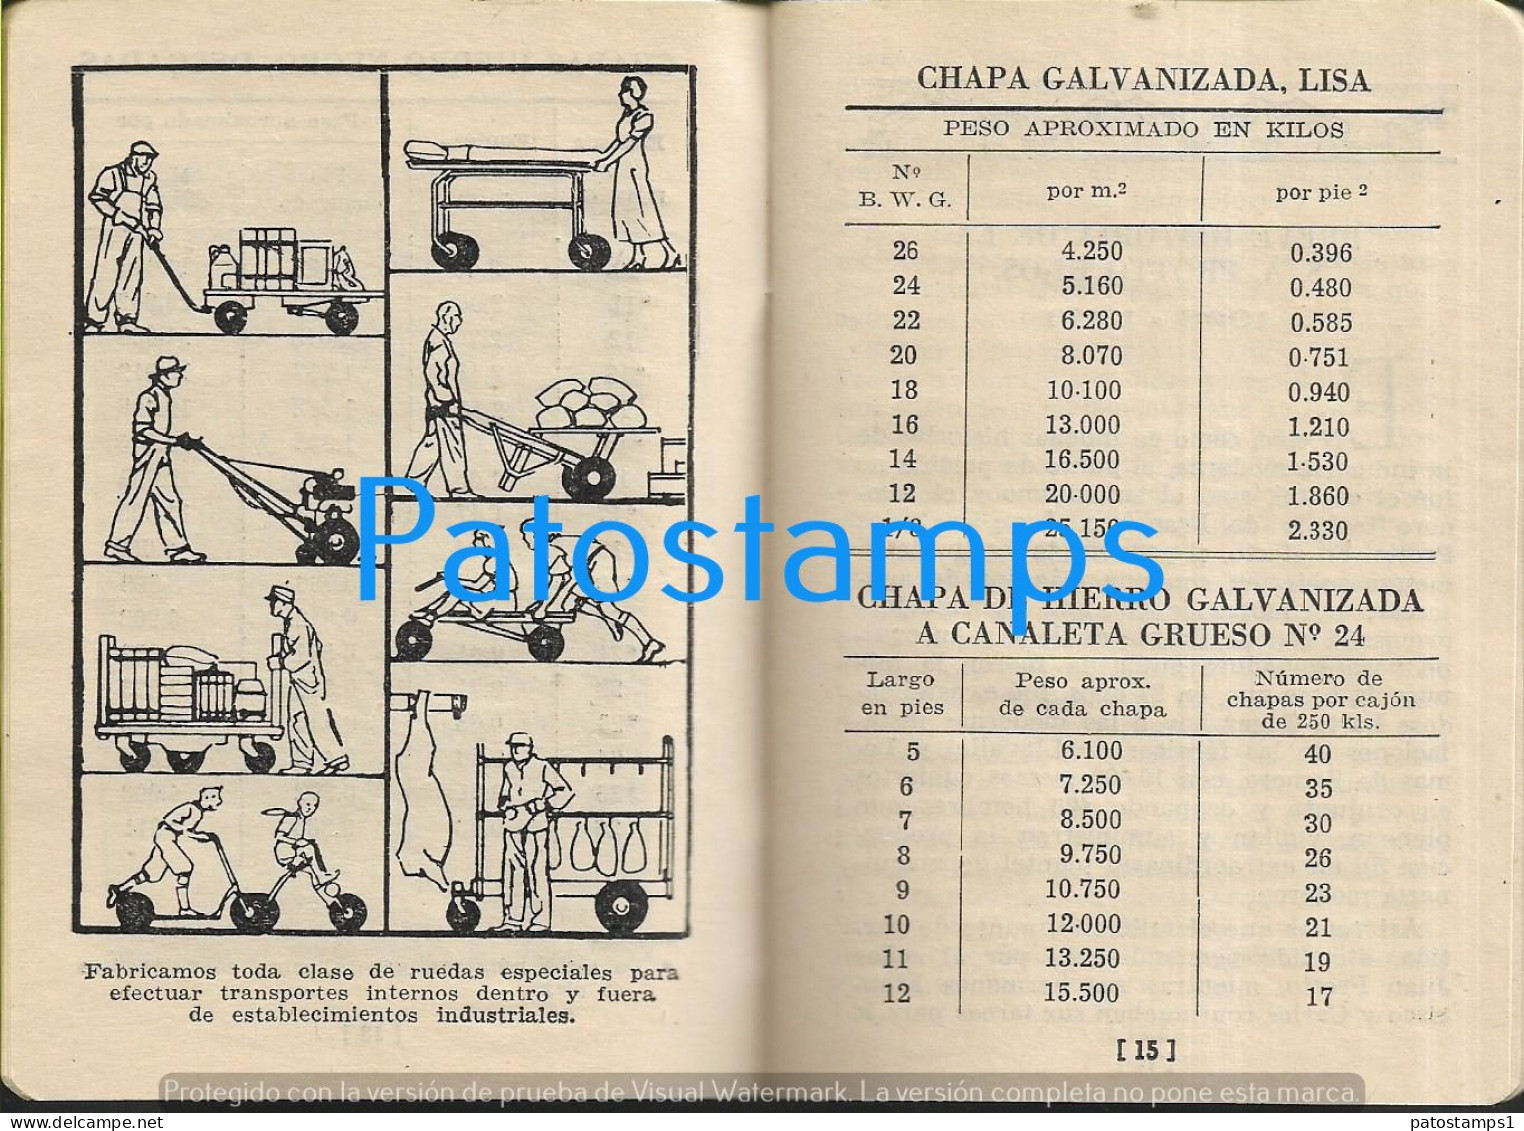 227148 ARGENTINA LOMAS DE ZAMORA GUIA PROTTO HNOS CALENDARIO 1951/52 NO POSTCARD - Argentina